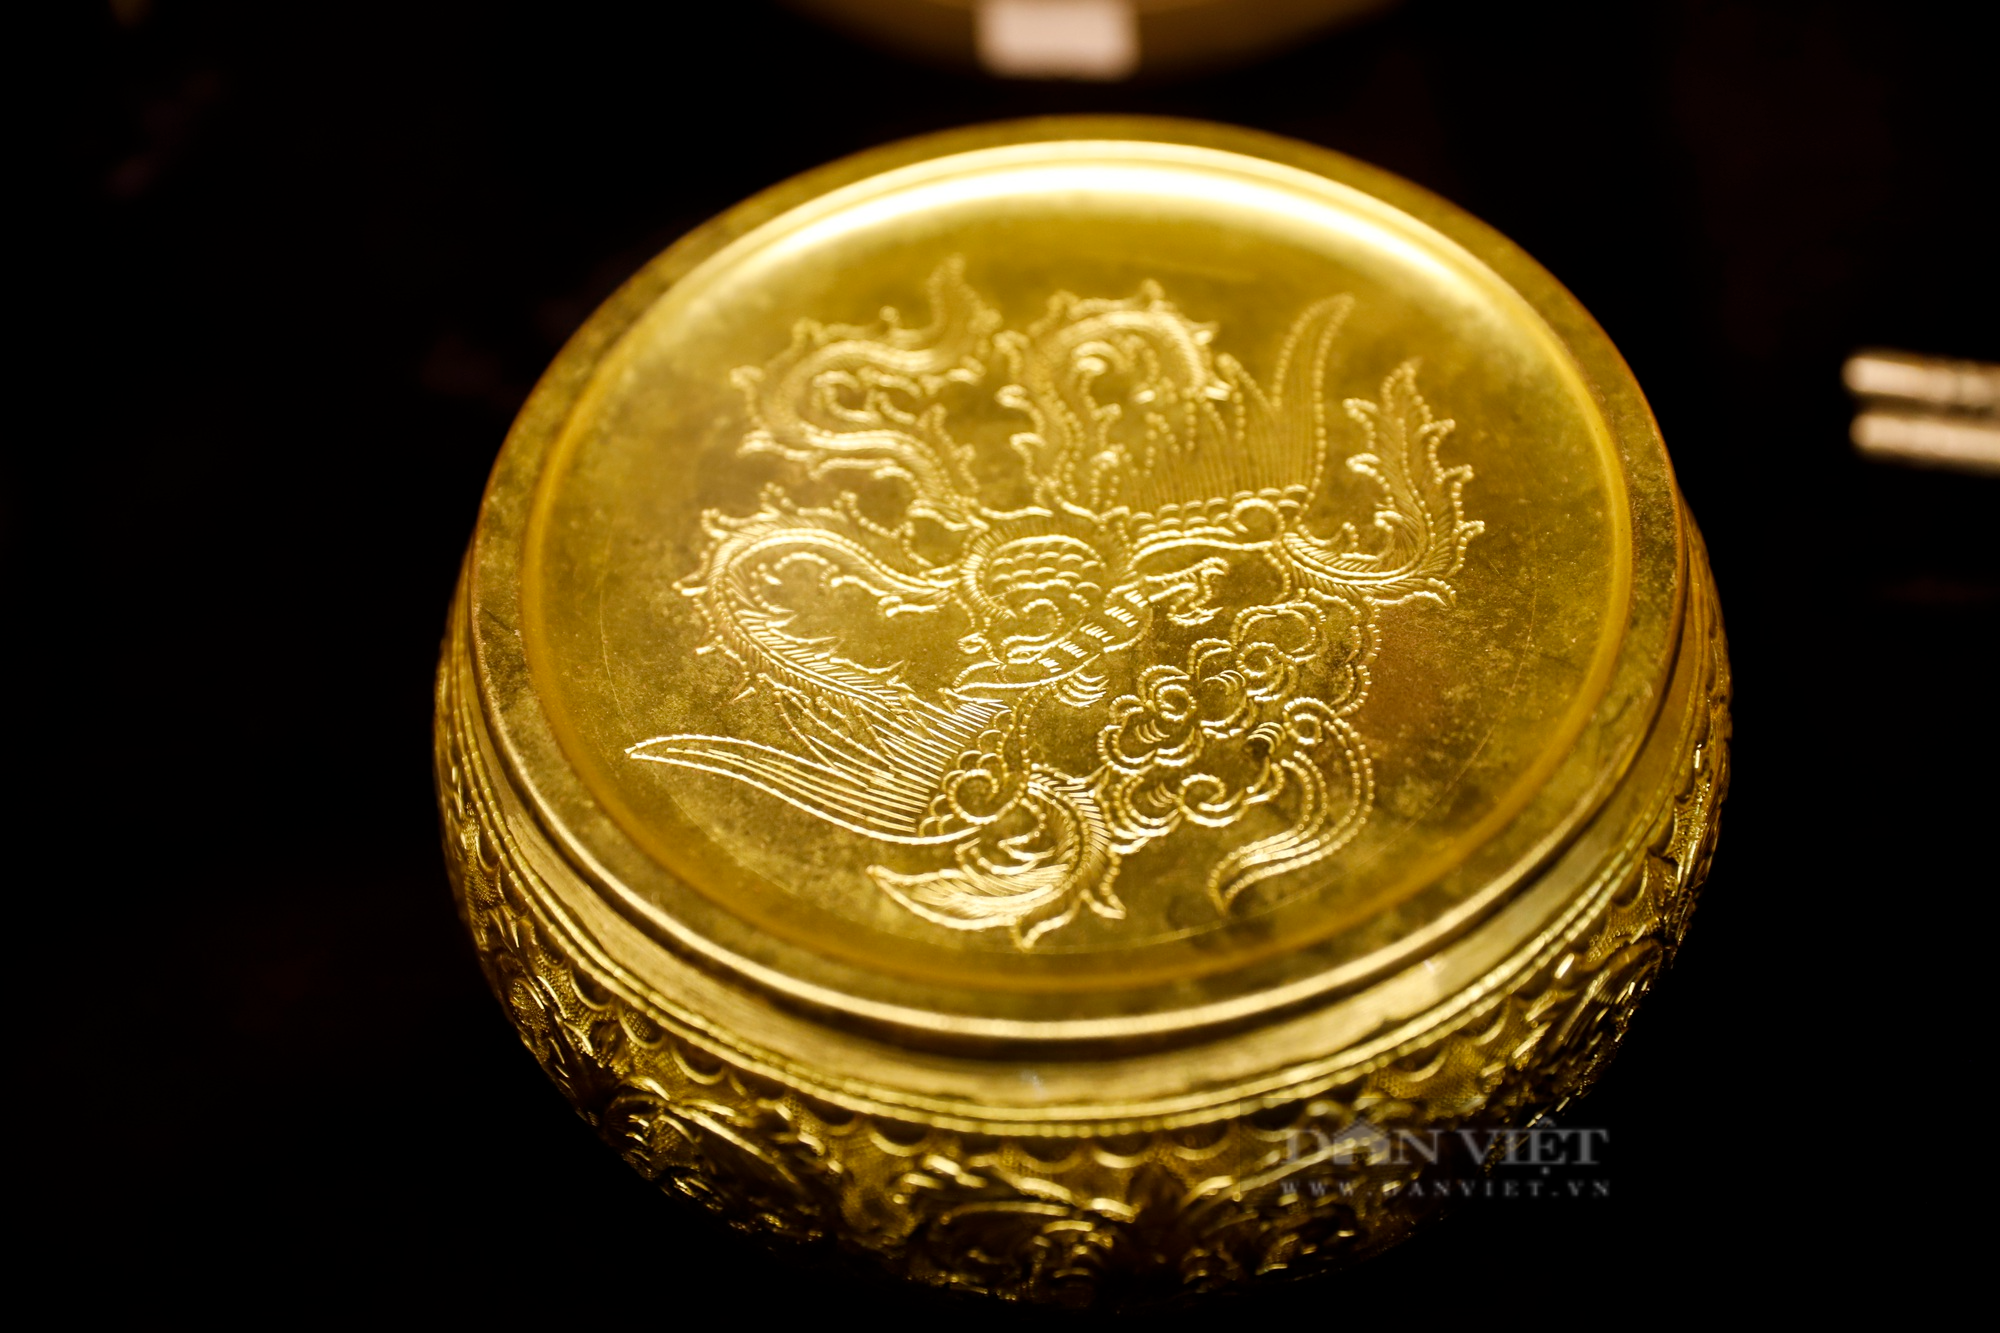 Những sản phẩm in đậm dấu ấn trăm năm nghề đúc vàng, bạc tại ngôi đình cổ giữa lòng phố cố Hà Nội - Ảnh 11.